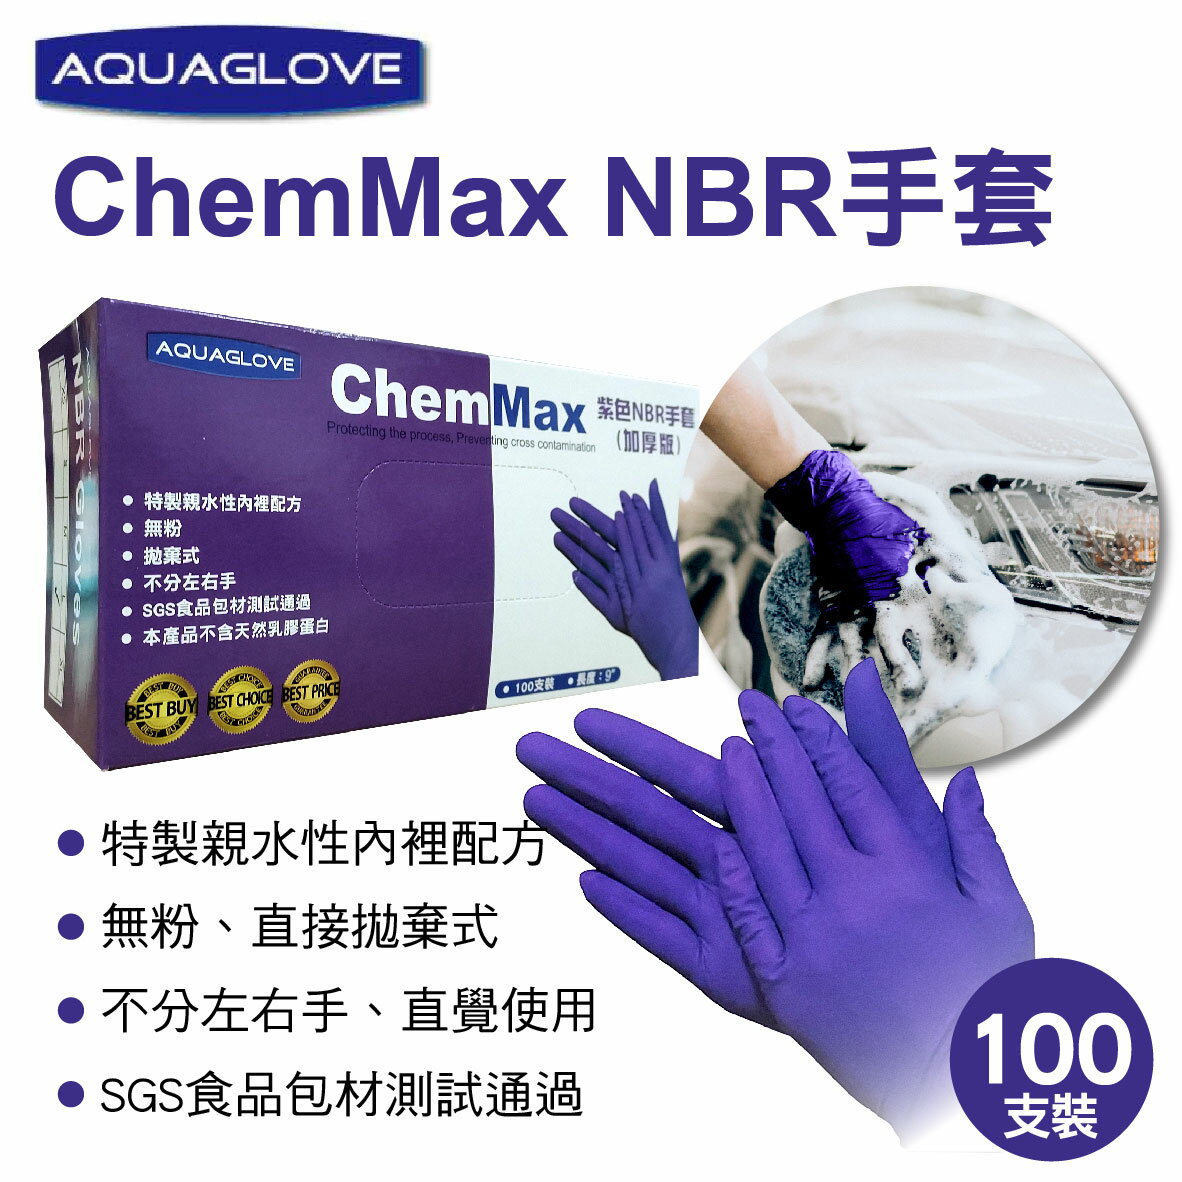 真便宜 AQUAGLOVE ChemMax NBR手套(尺寸L/XL)